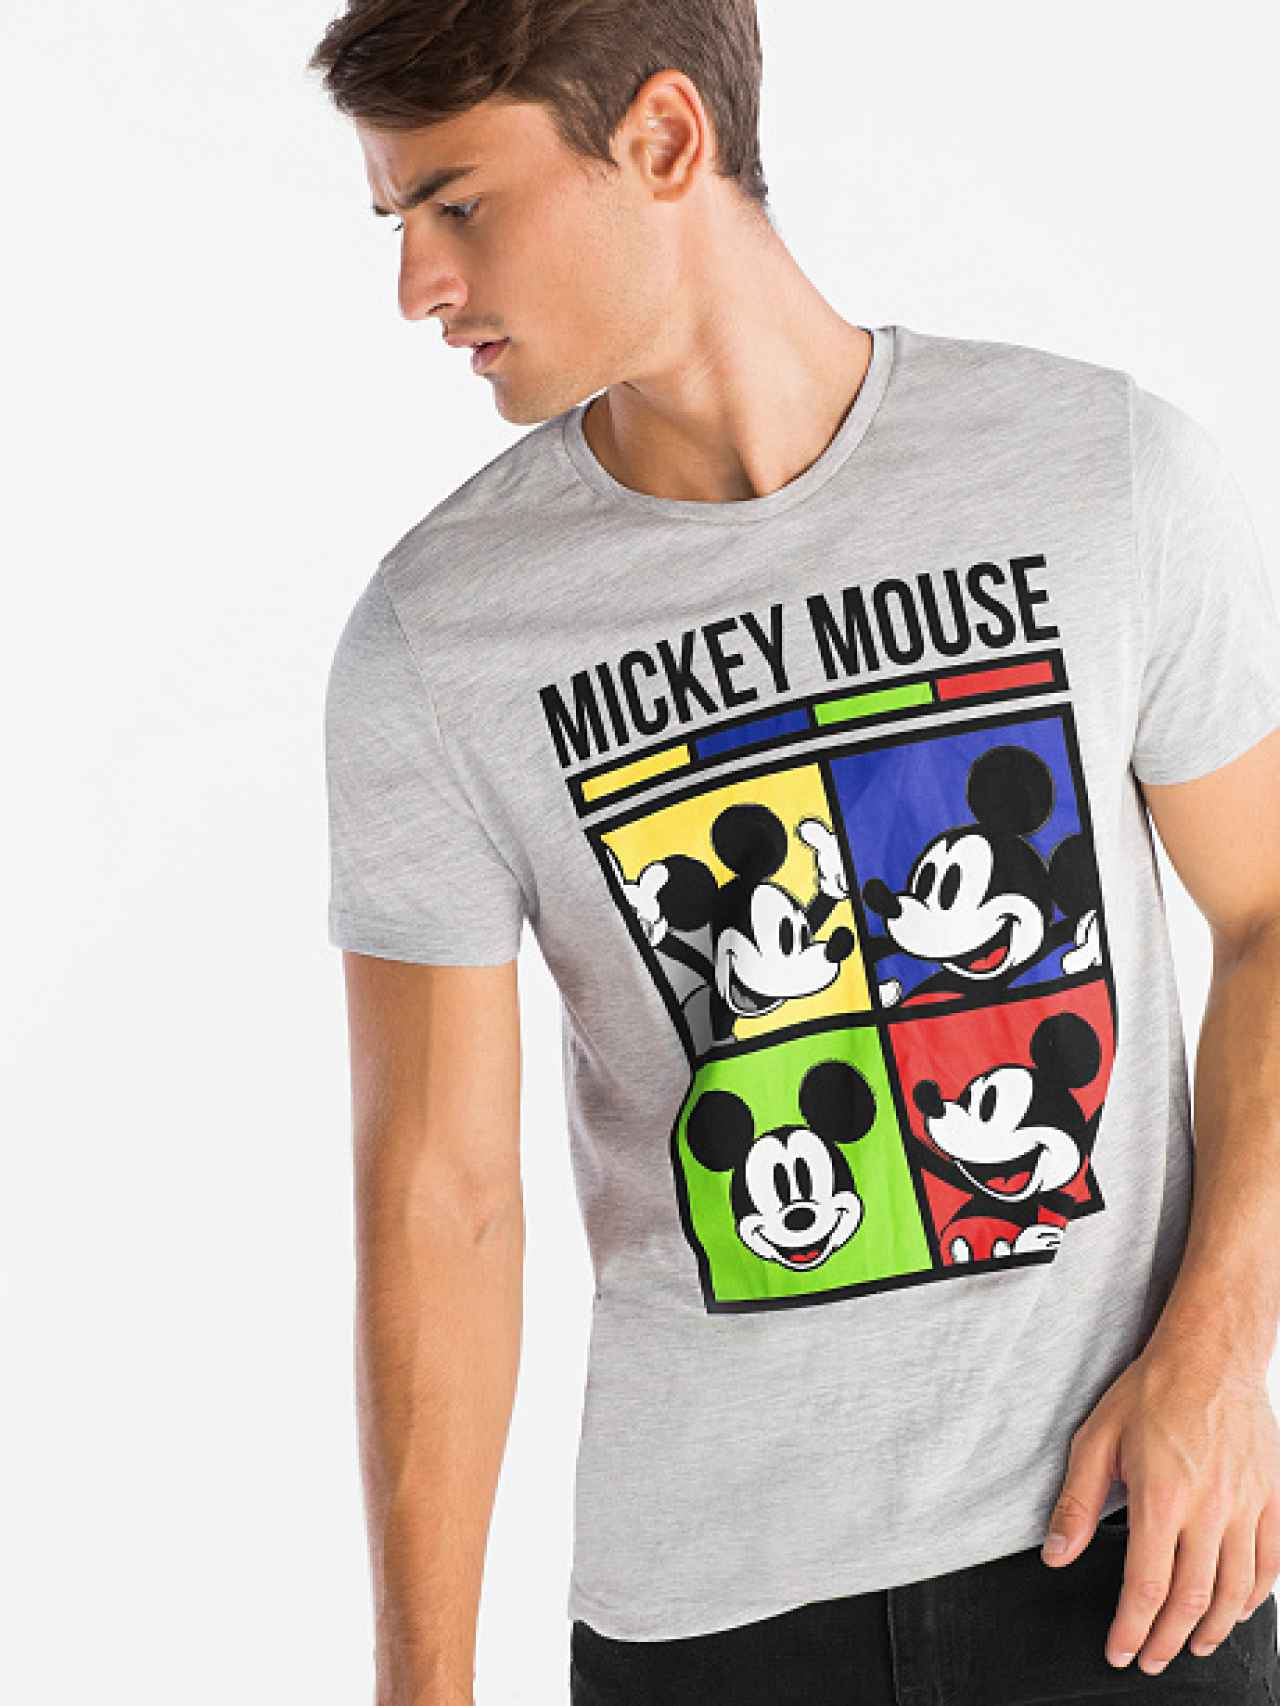 muy Preconcepción Temprano Cinco marcas de moda homenajean a Mickey Mouse por su 90 cumpleaños